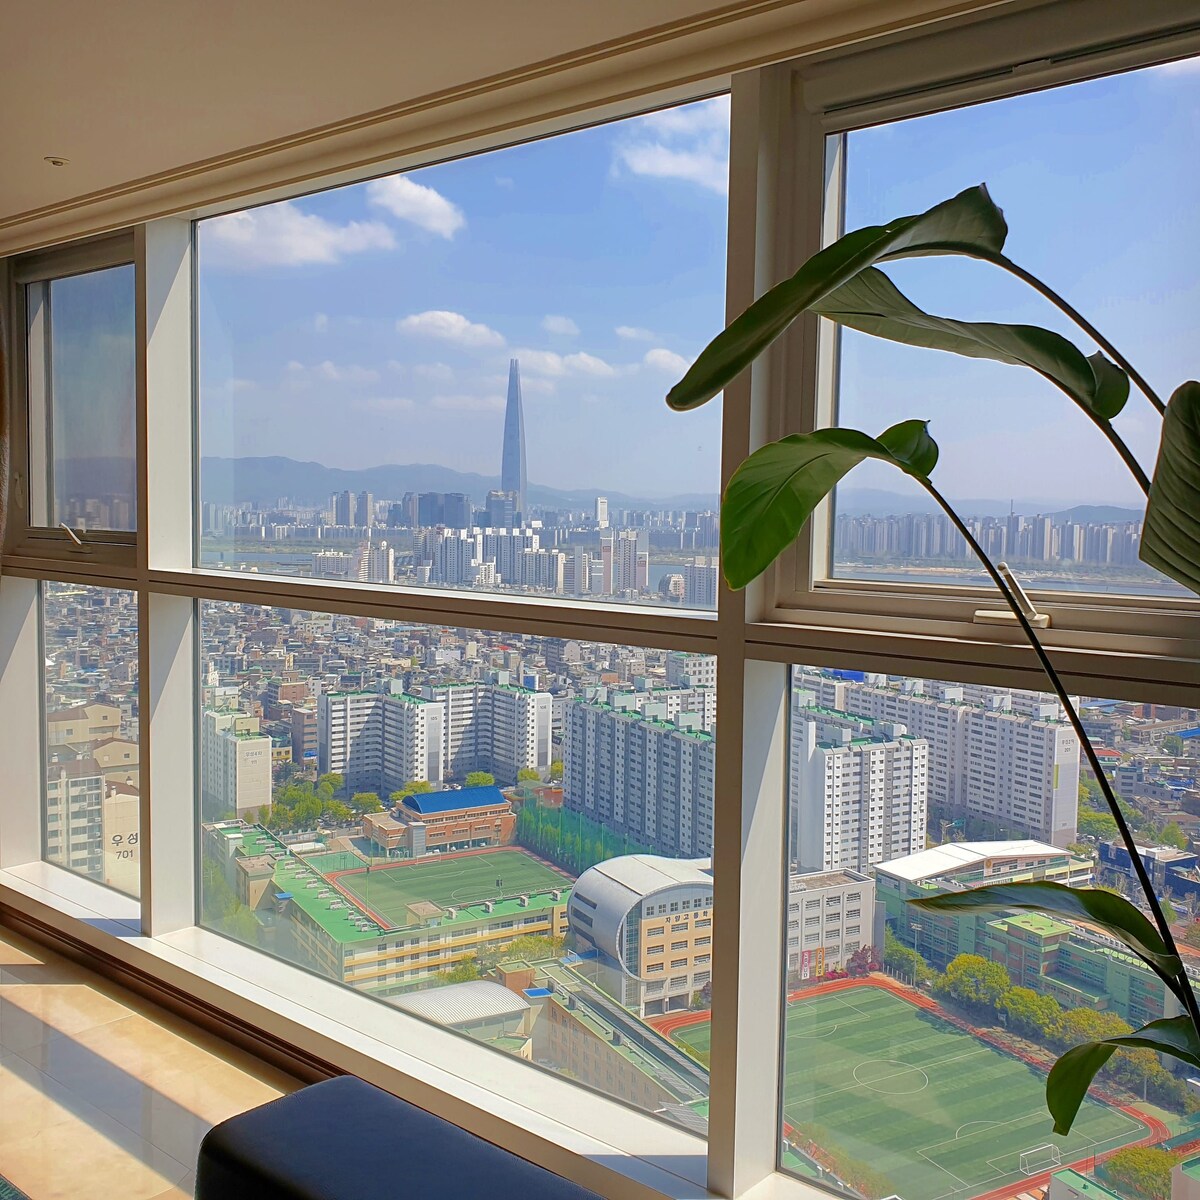 The View, Seoul # 191平方米公寓， 5分钟可达Kunkuk地铁站